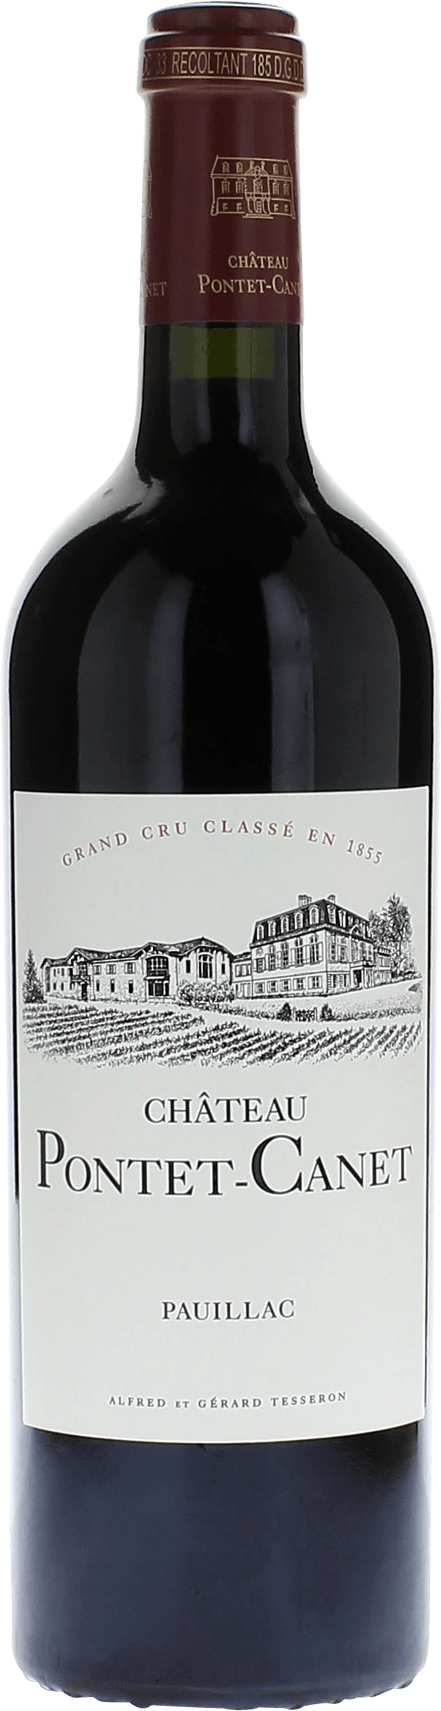 Pontet canet 1992 5me Grand cru class Pauillac, Bordeaux rouge